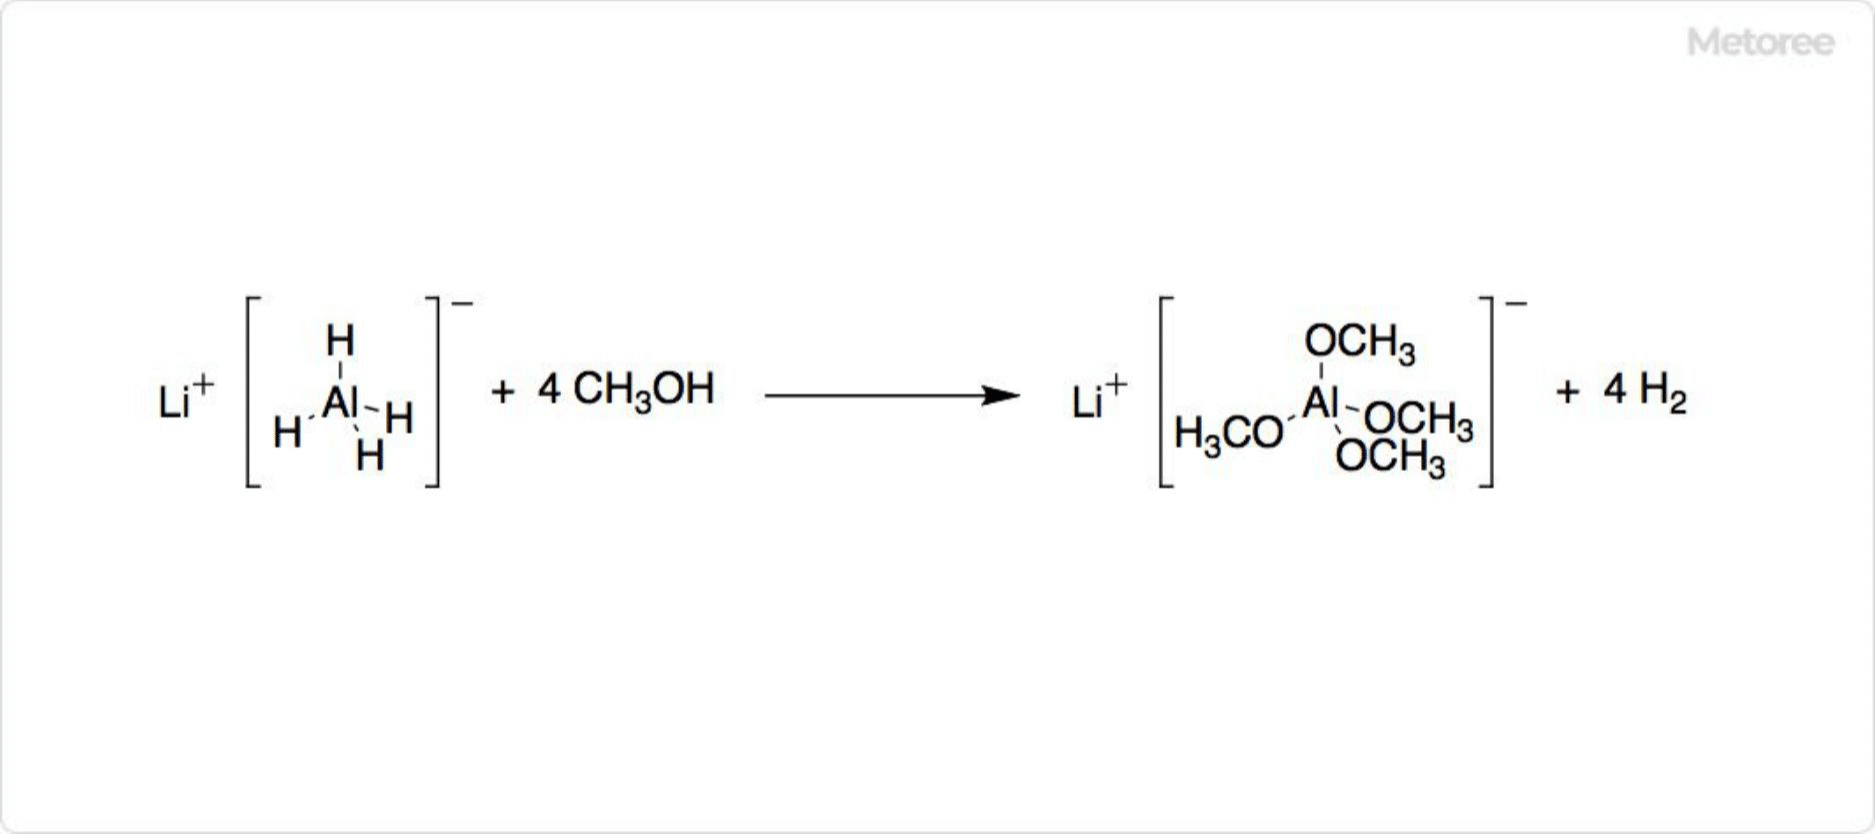 Figure 2. Decomposition of lithium aluminum hydride